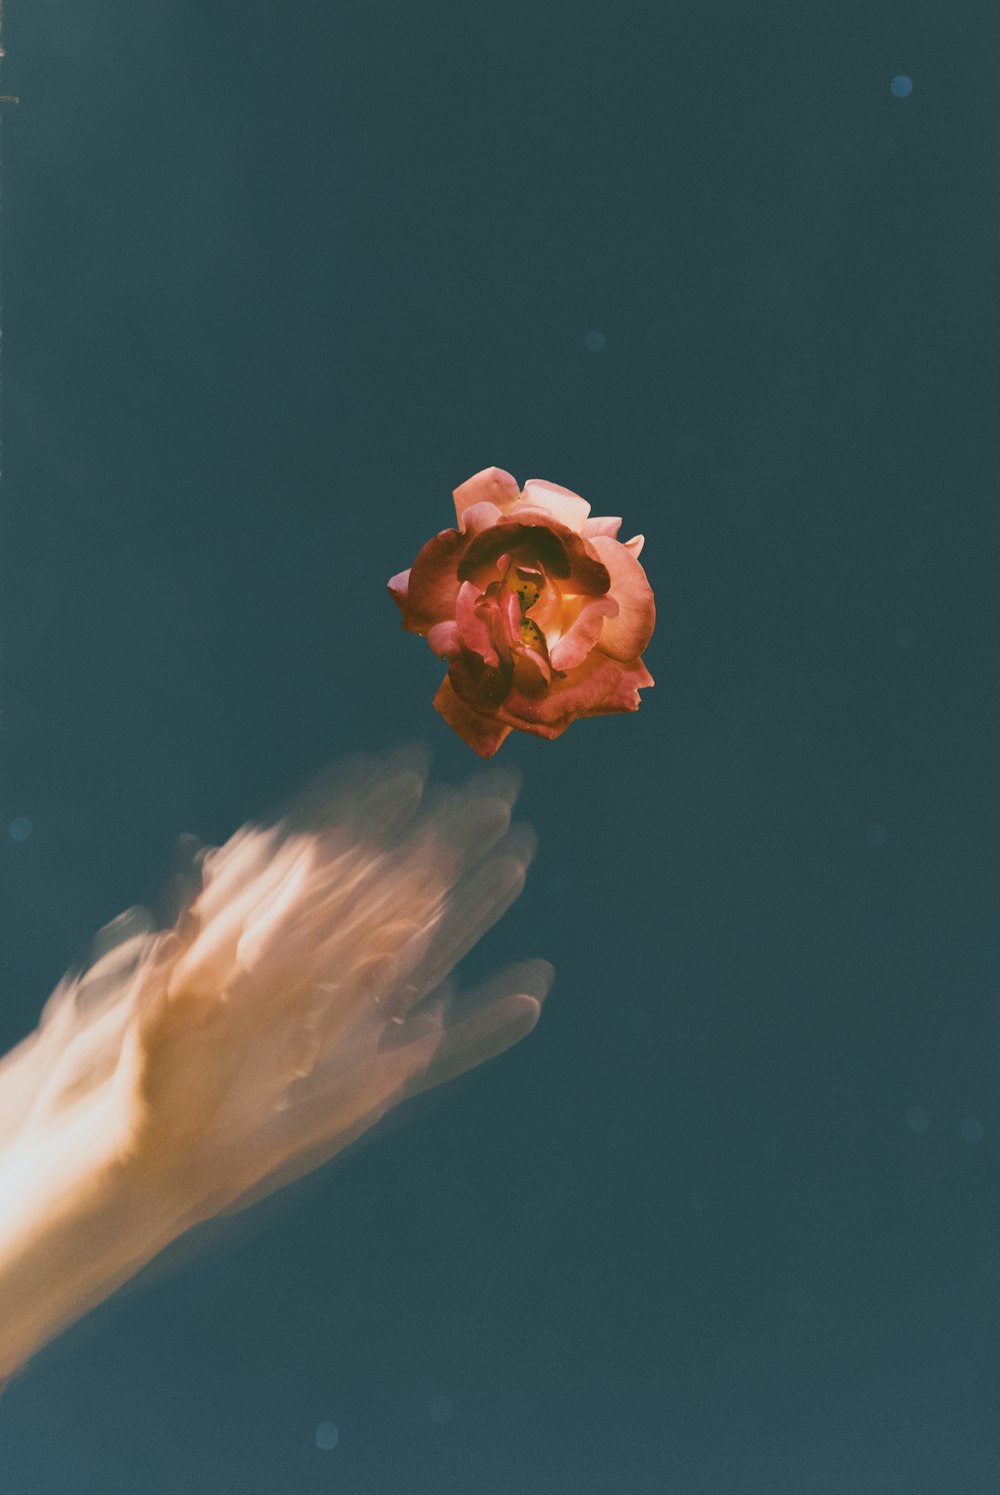 fiore rosso sullo specchio d'acqua con riflesso della mano umana